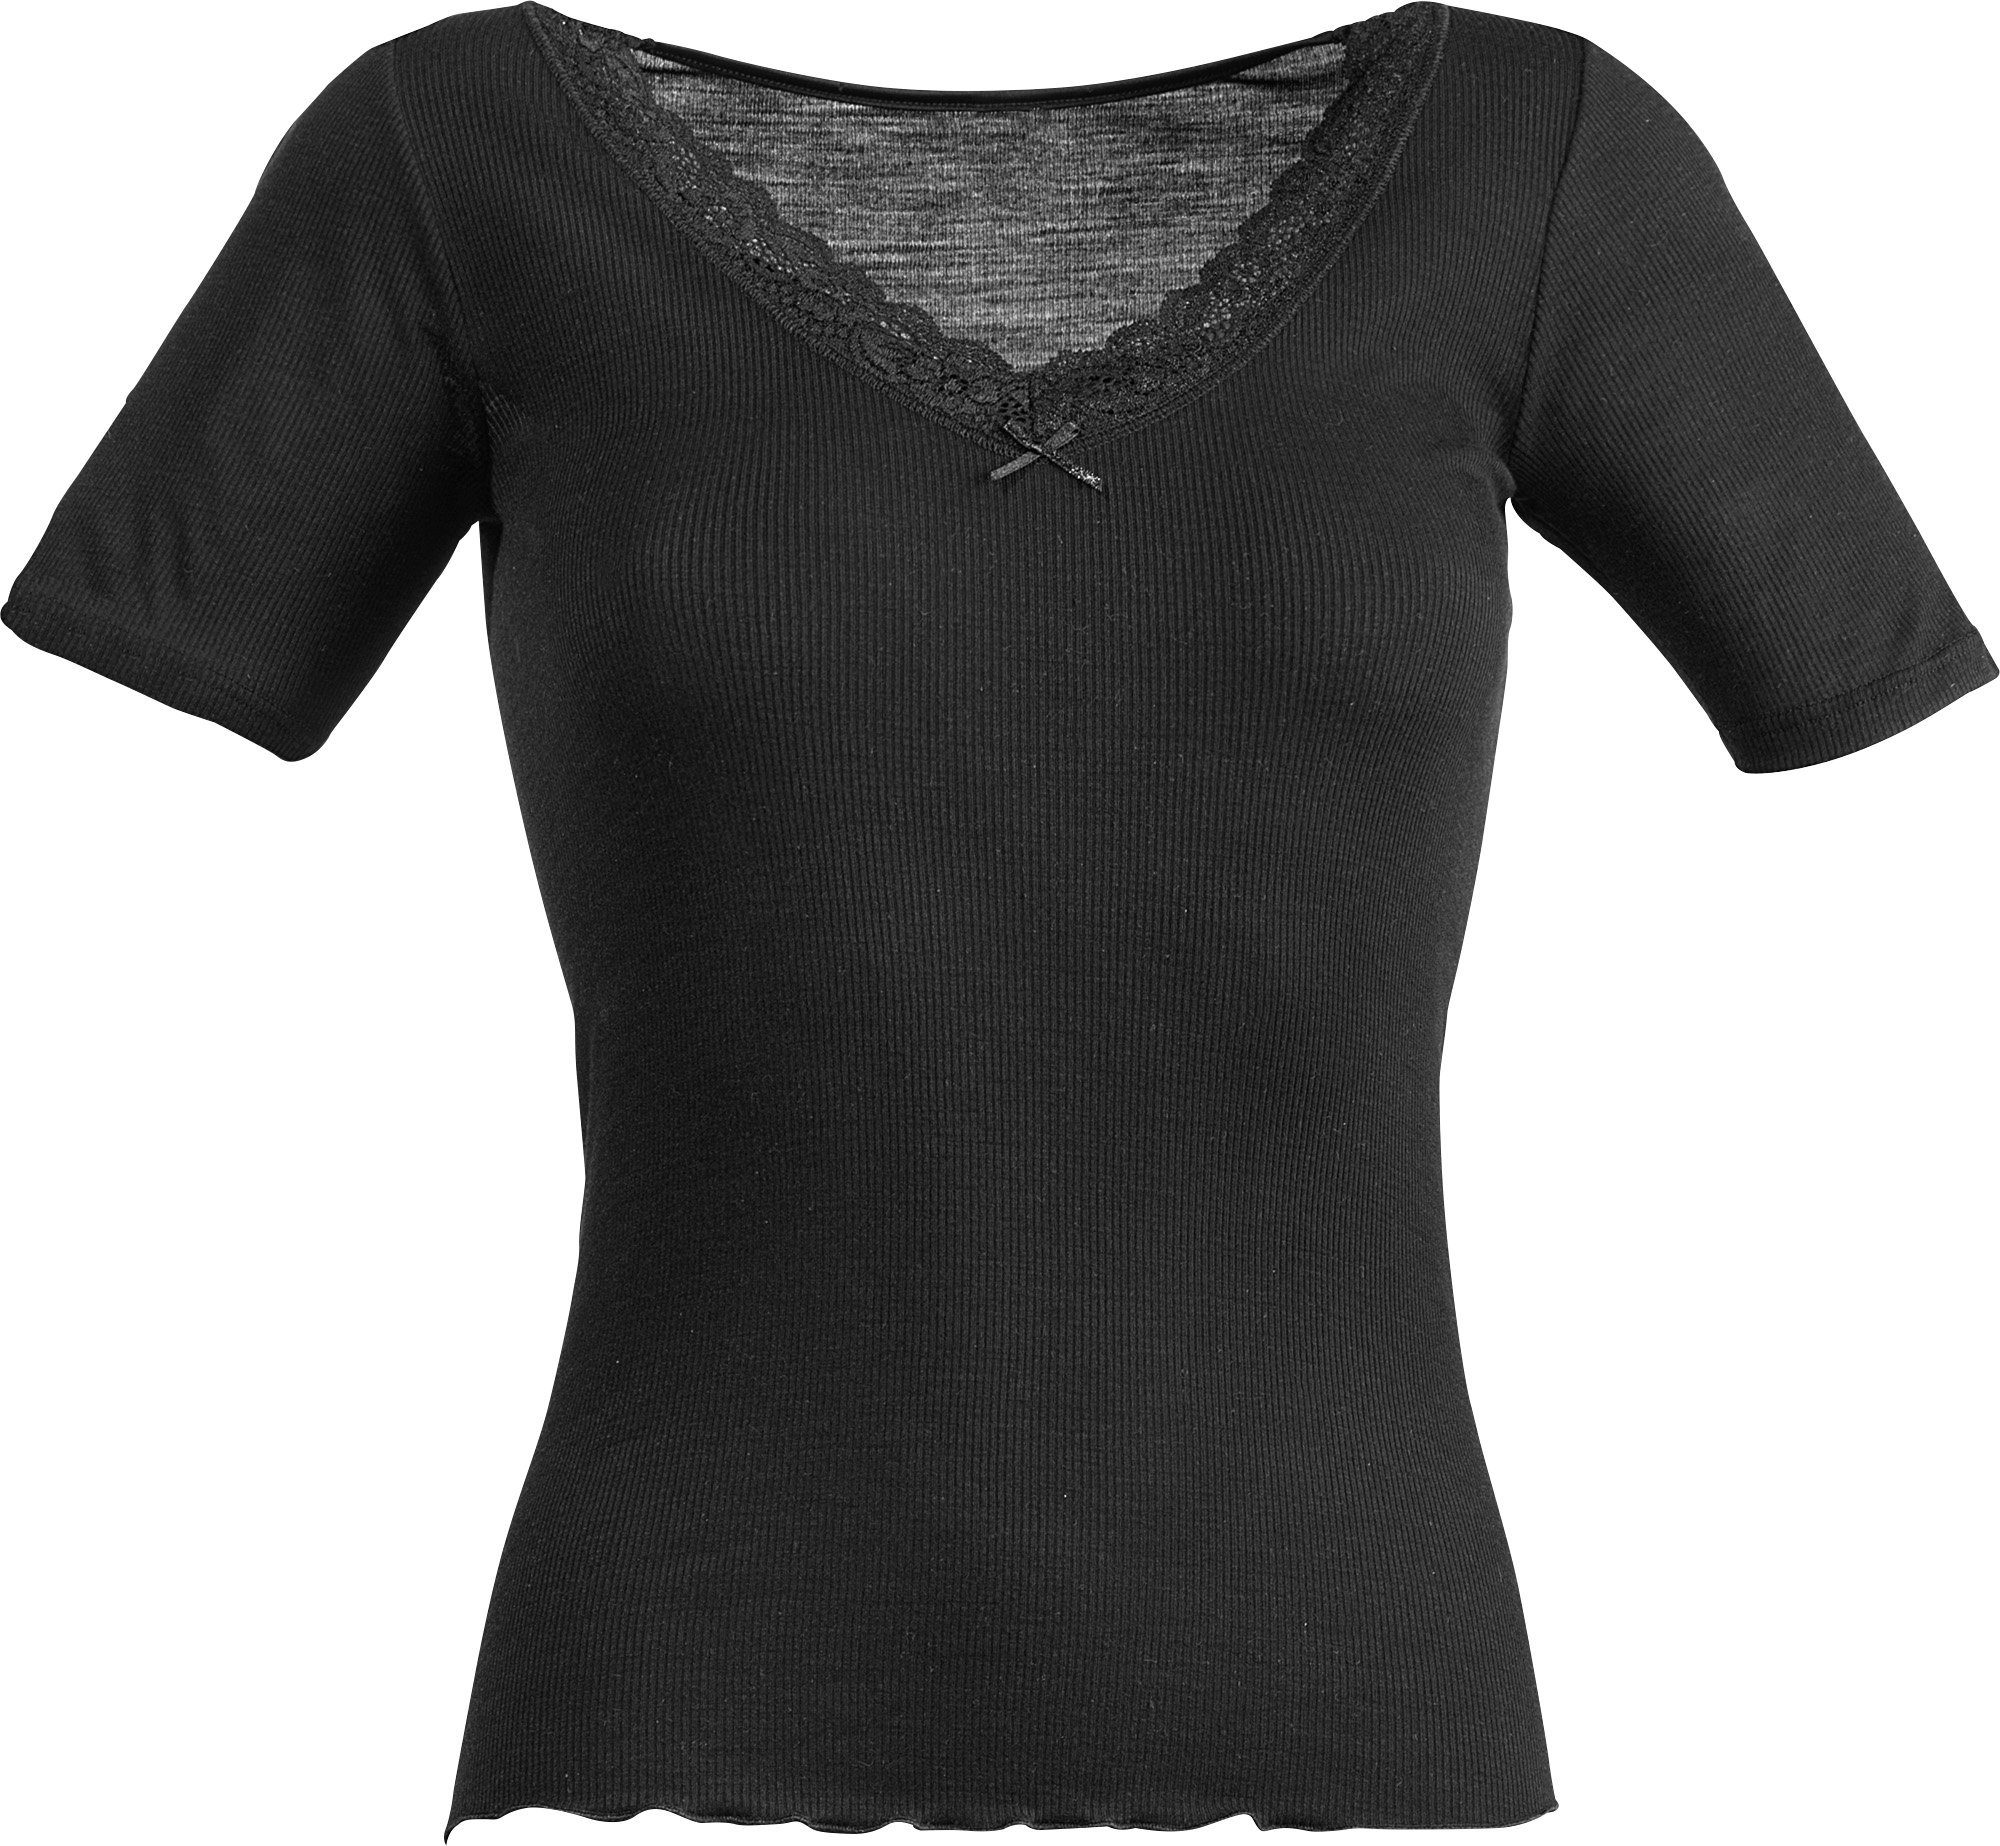 Nina Von C. Unterhemd Damen-Unterhemd, 1/2-Arm Feinripp Uni schwarz